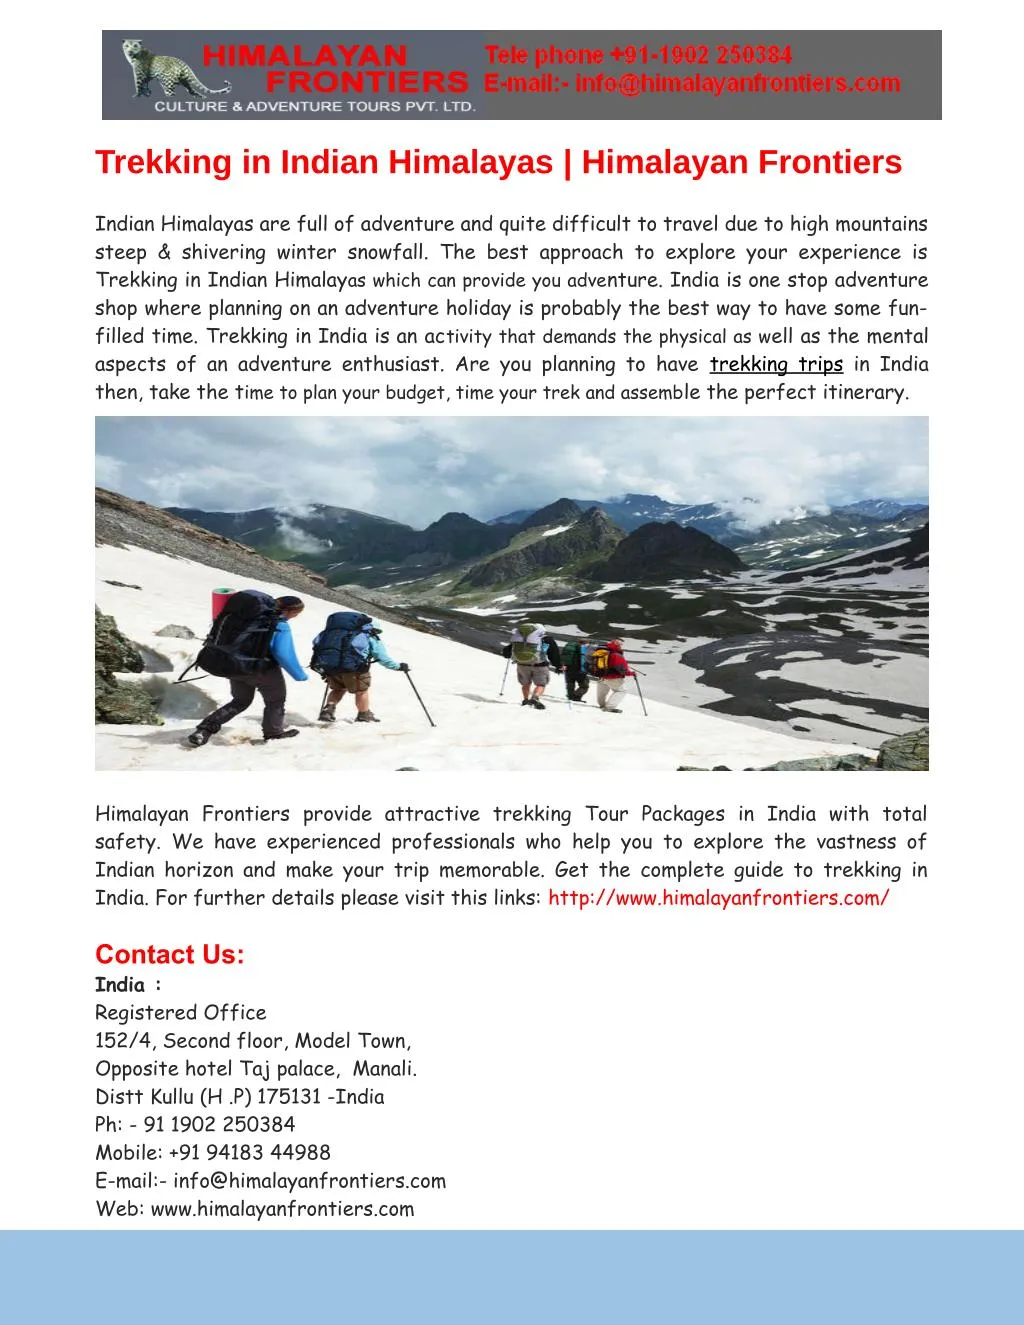 trekking in indian himalayas himalayan frontiers